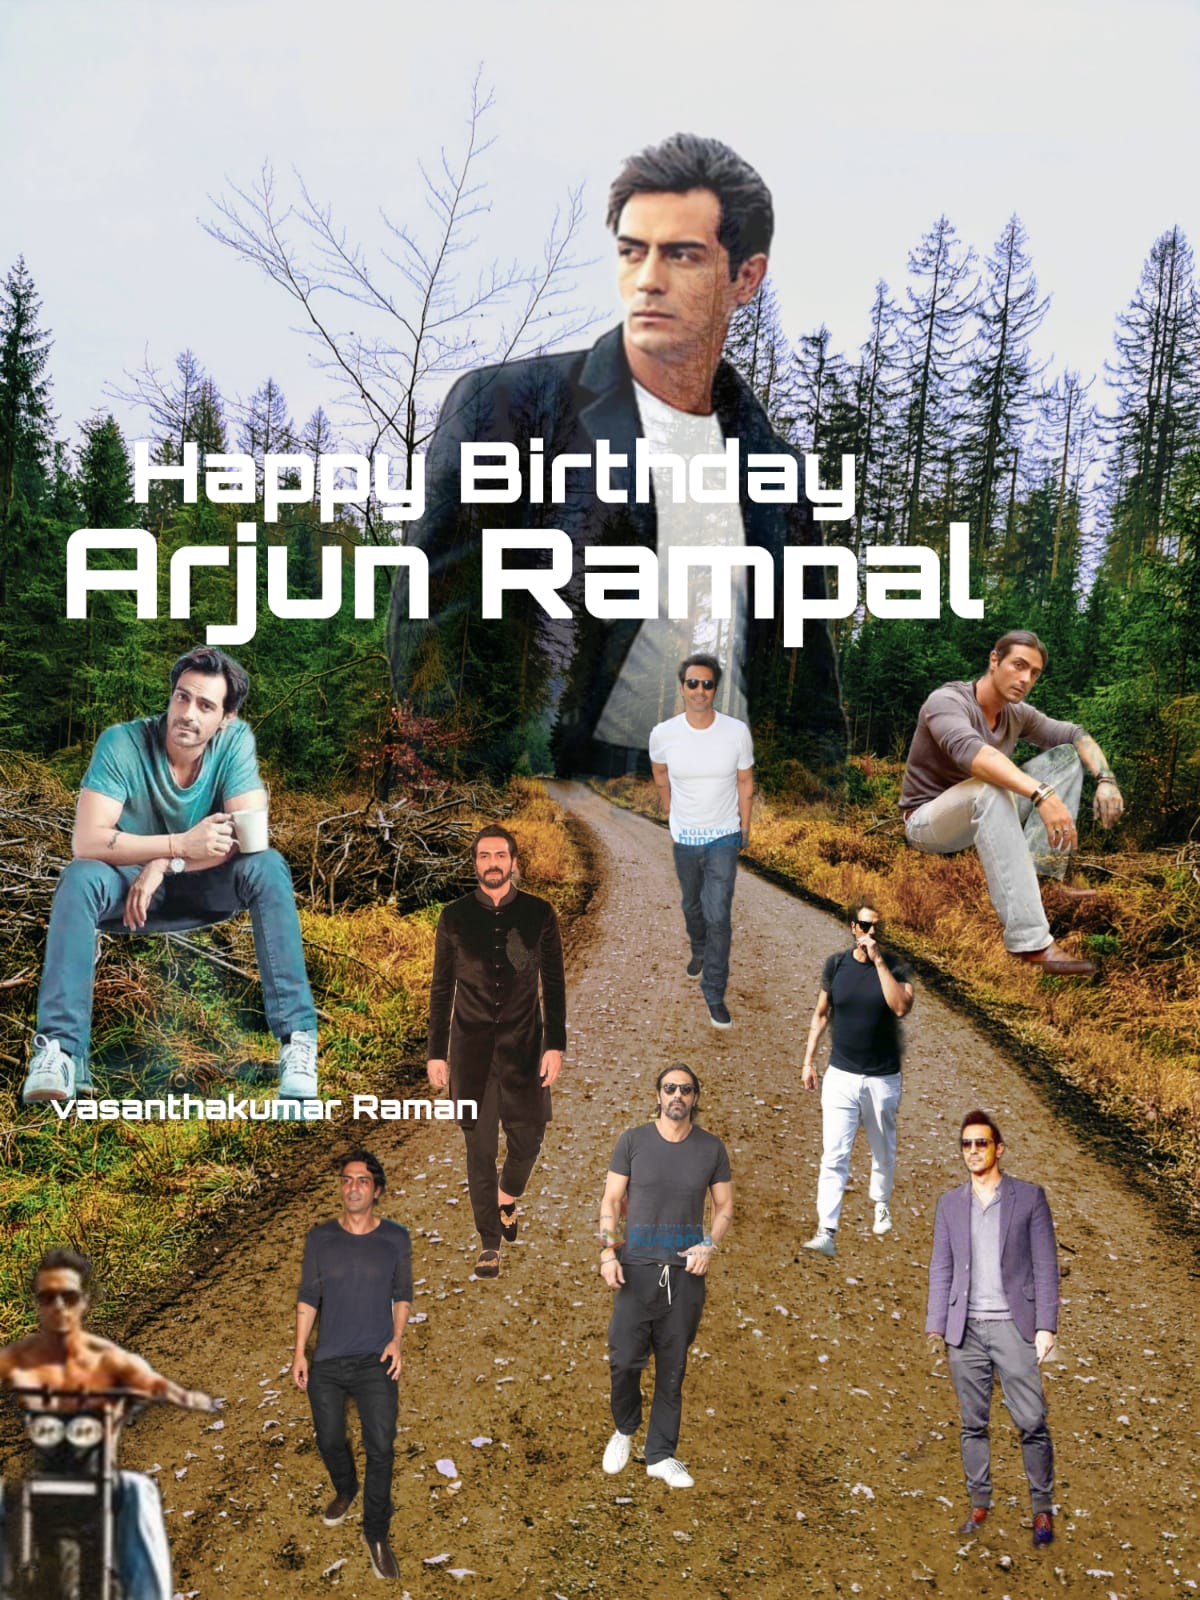 Happy birthday
Arjun rampal   